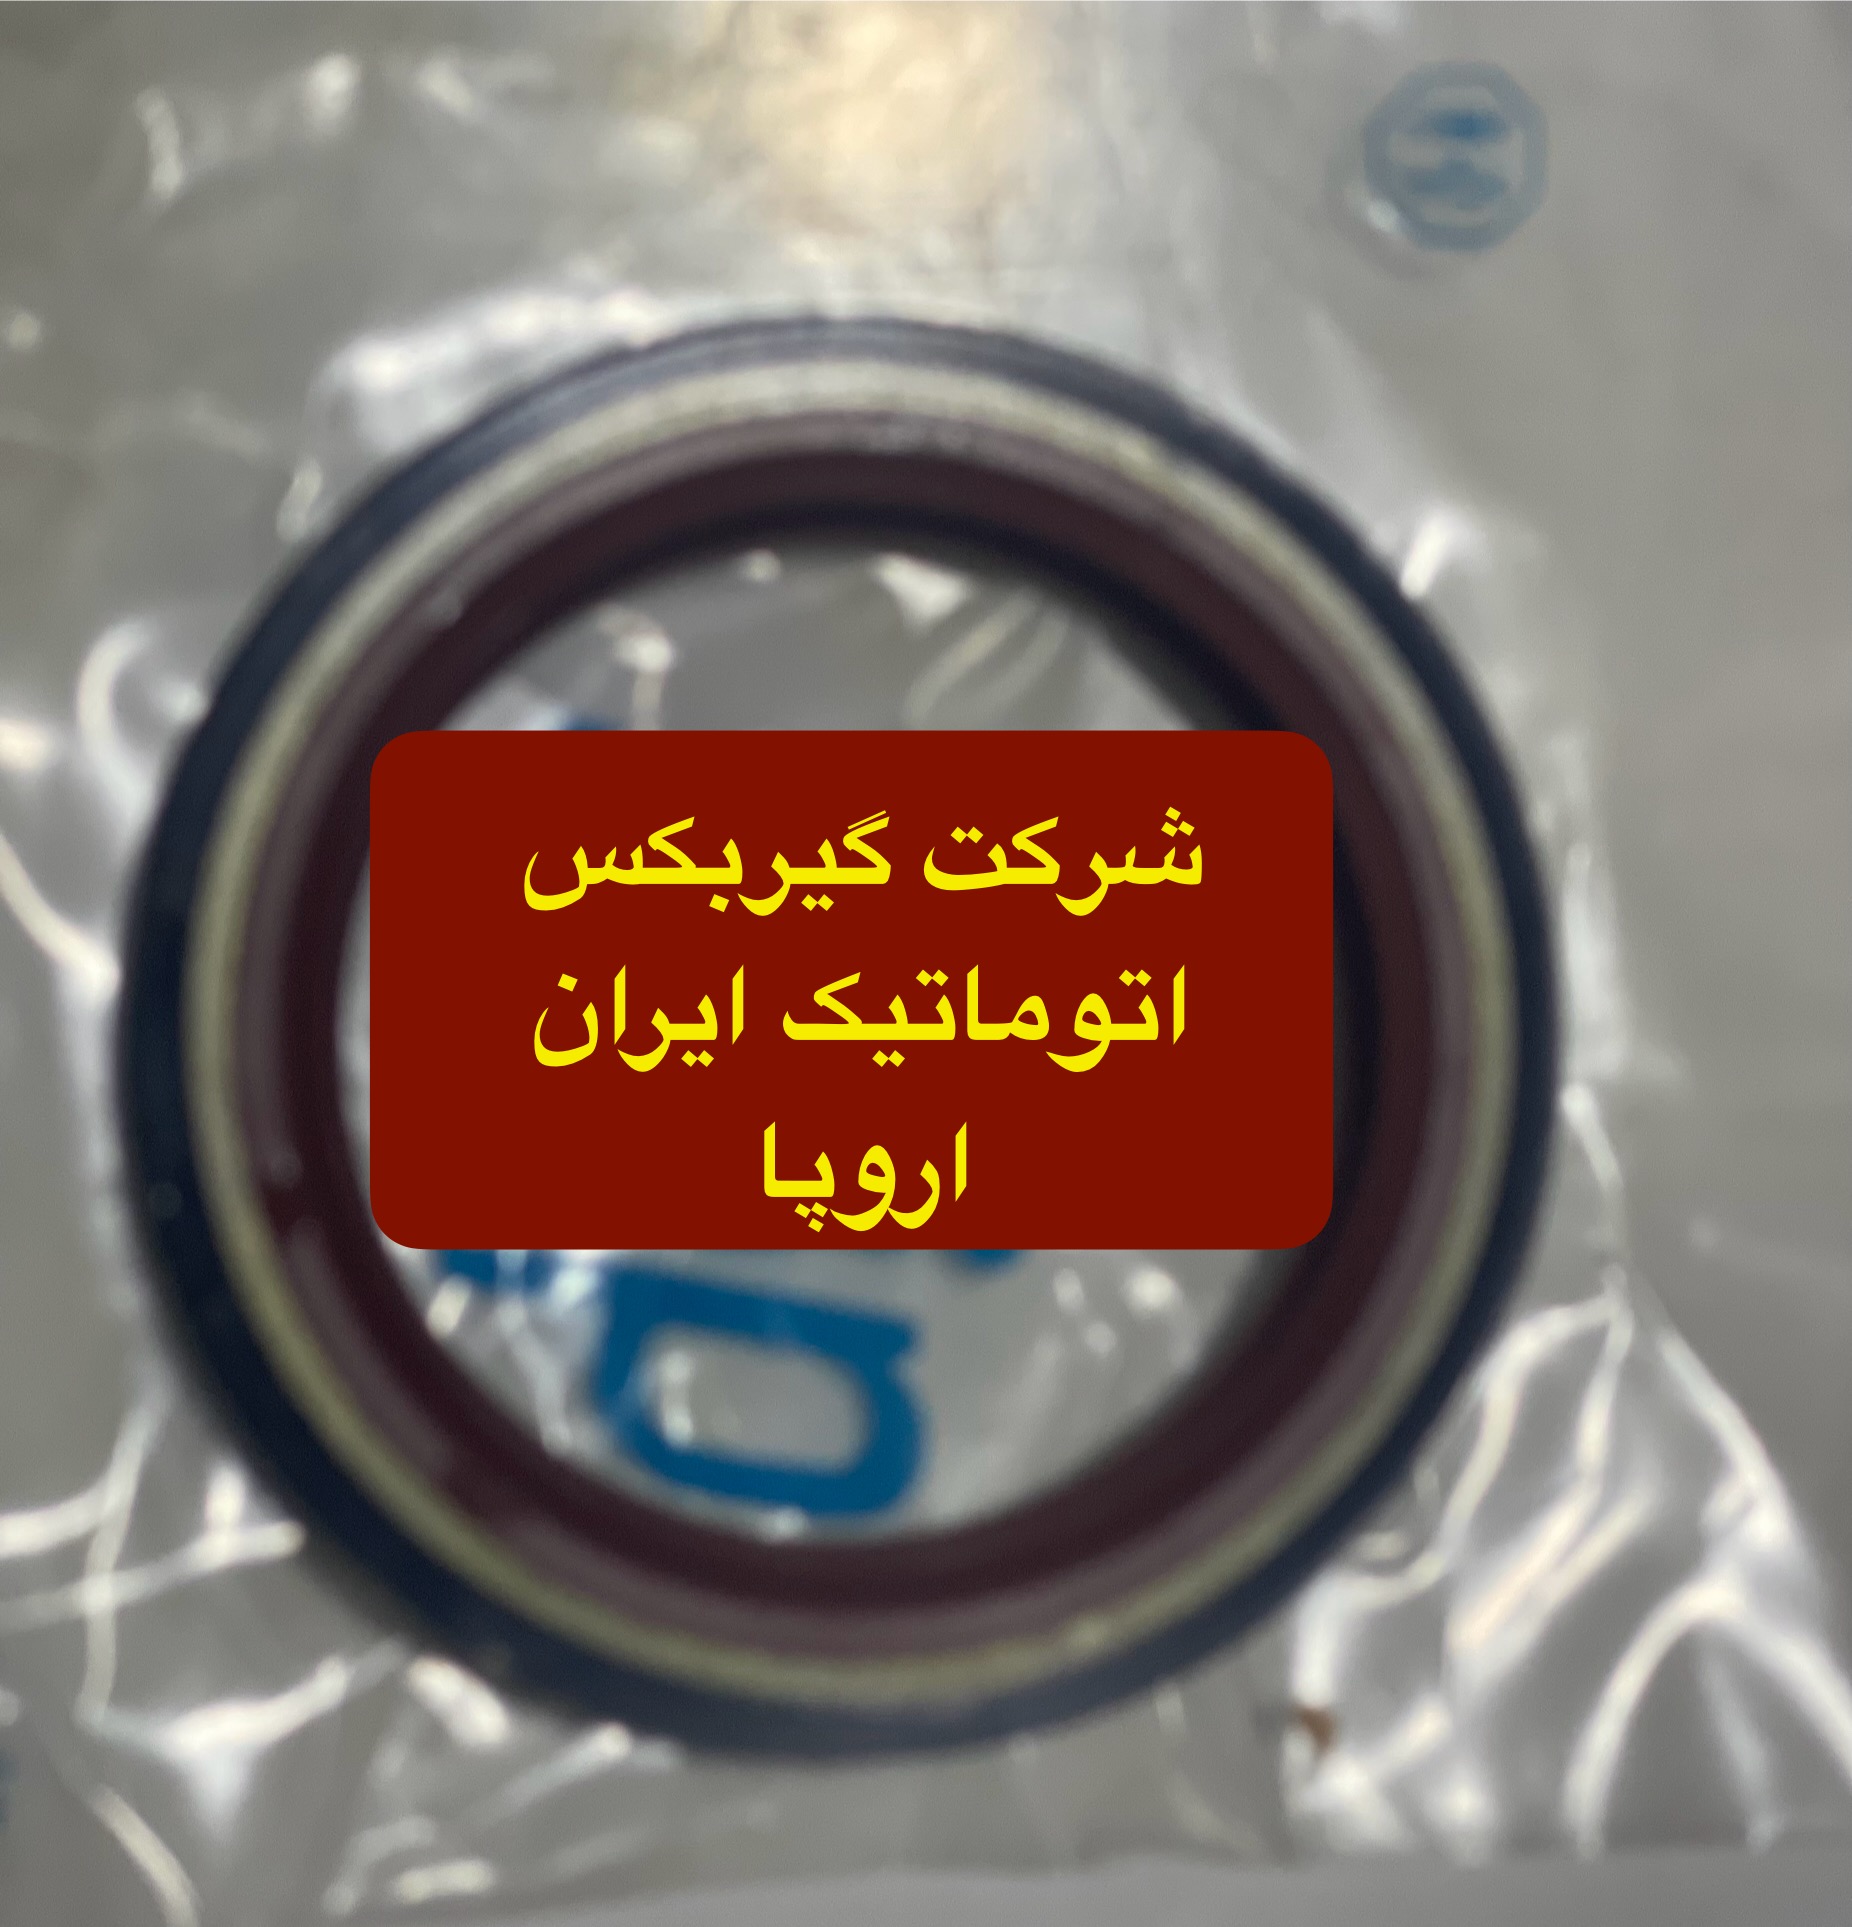 شرکت (تعمیرگاه) گیربکس اتوماتیک ایران اروپا فروش کاسه نمد اویل پمب گیربکس اتوماتیک L90